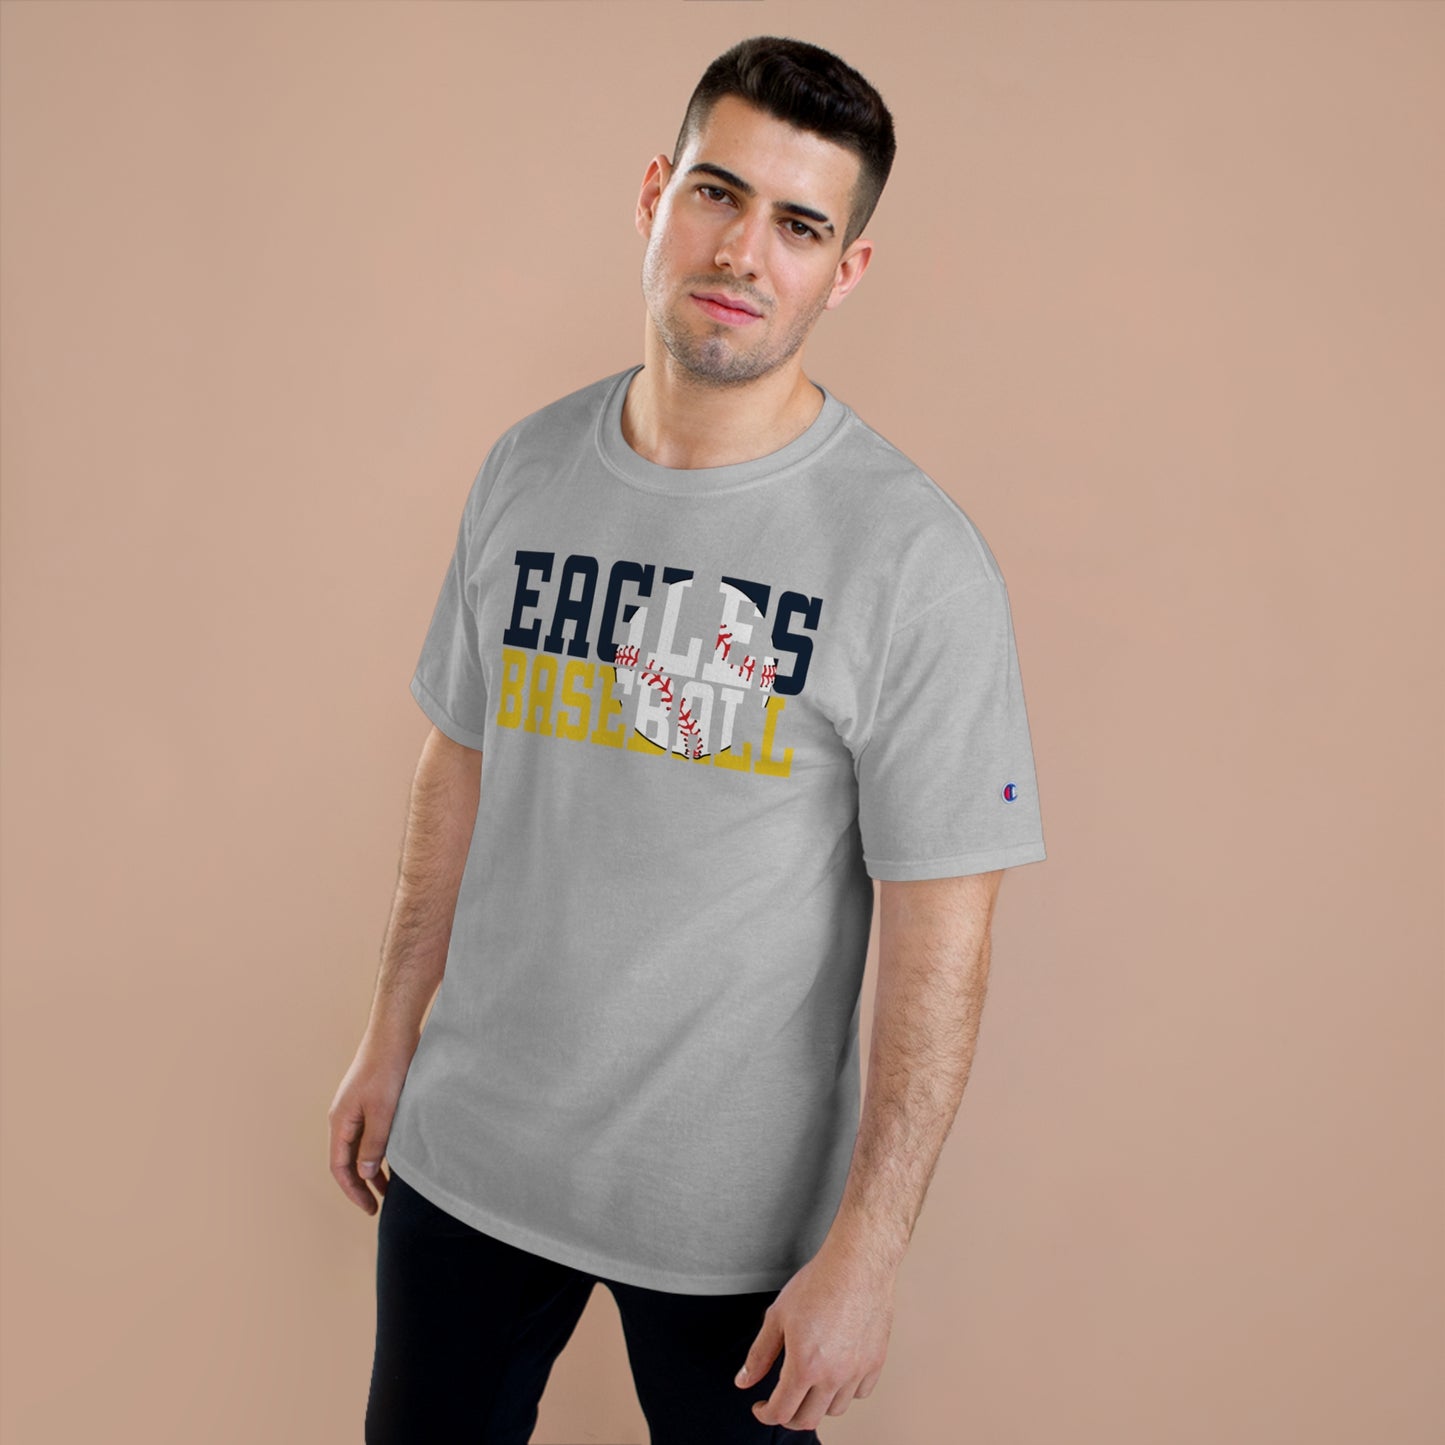 Baseball Cutout - Champion T-Shirt